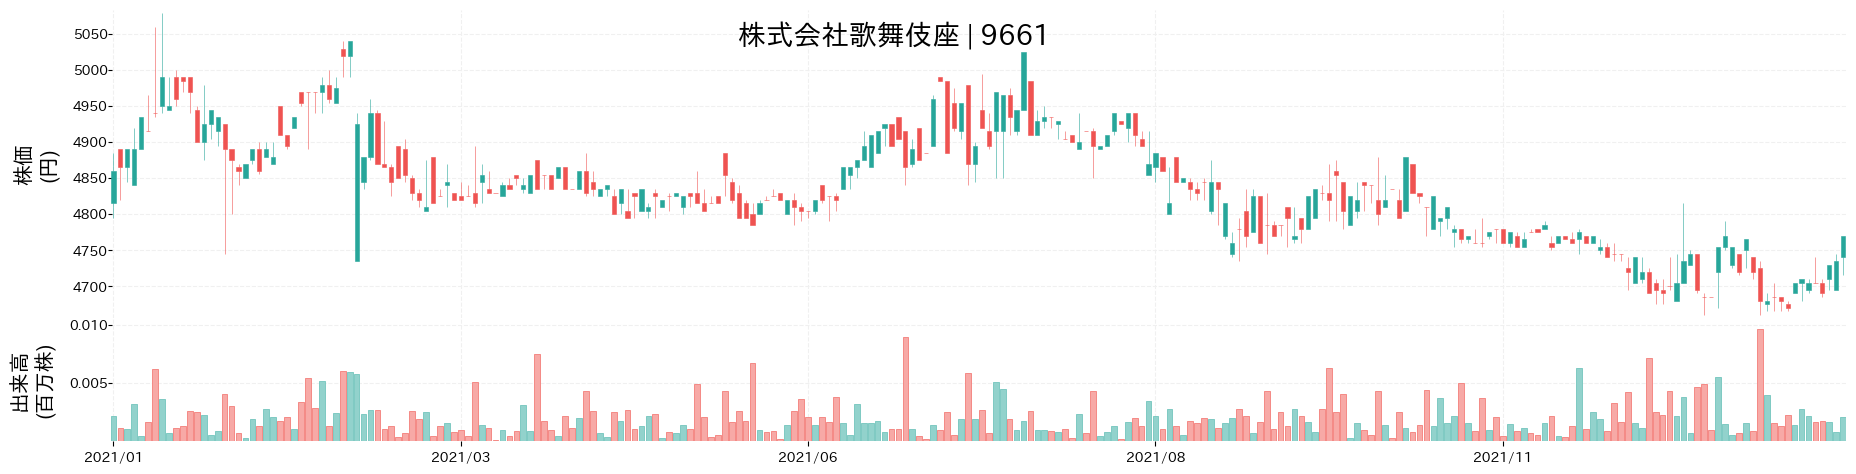 歌舞伎座の株価推移(2021)